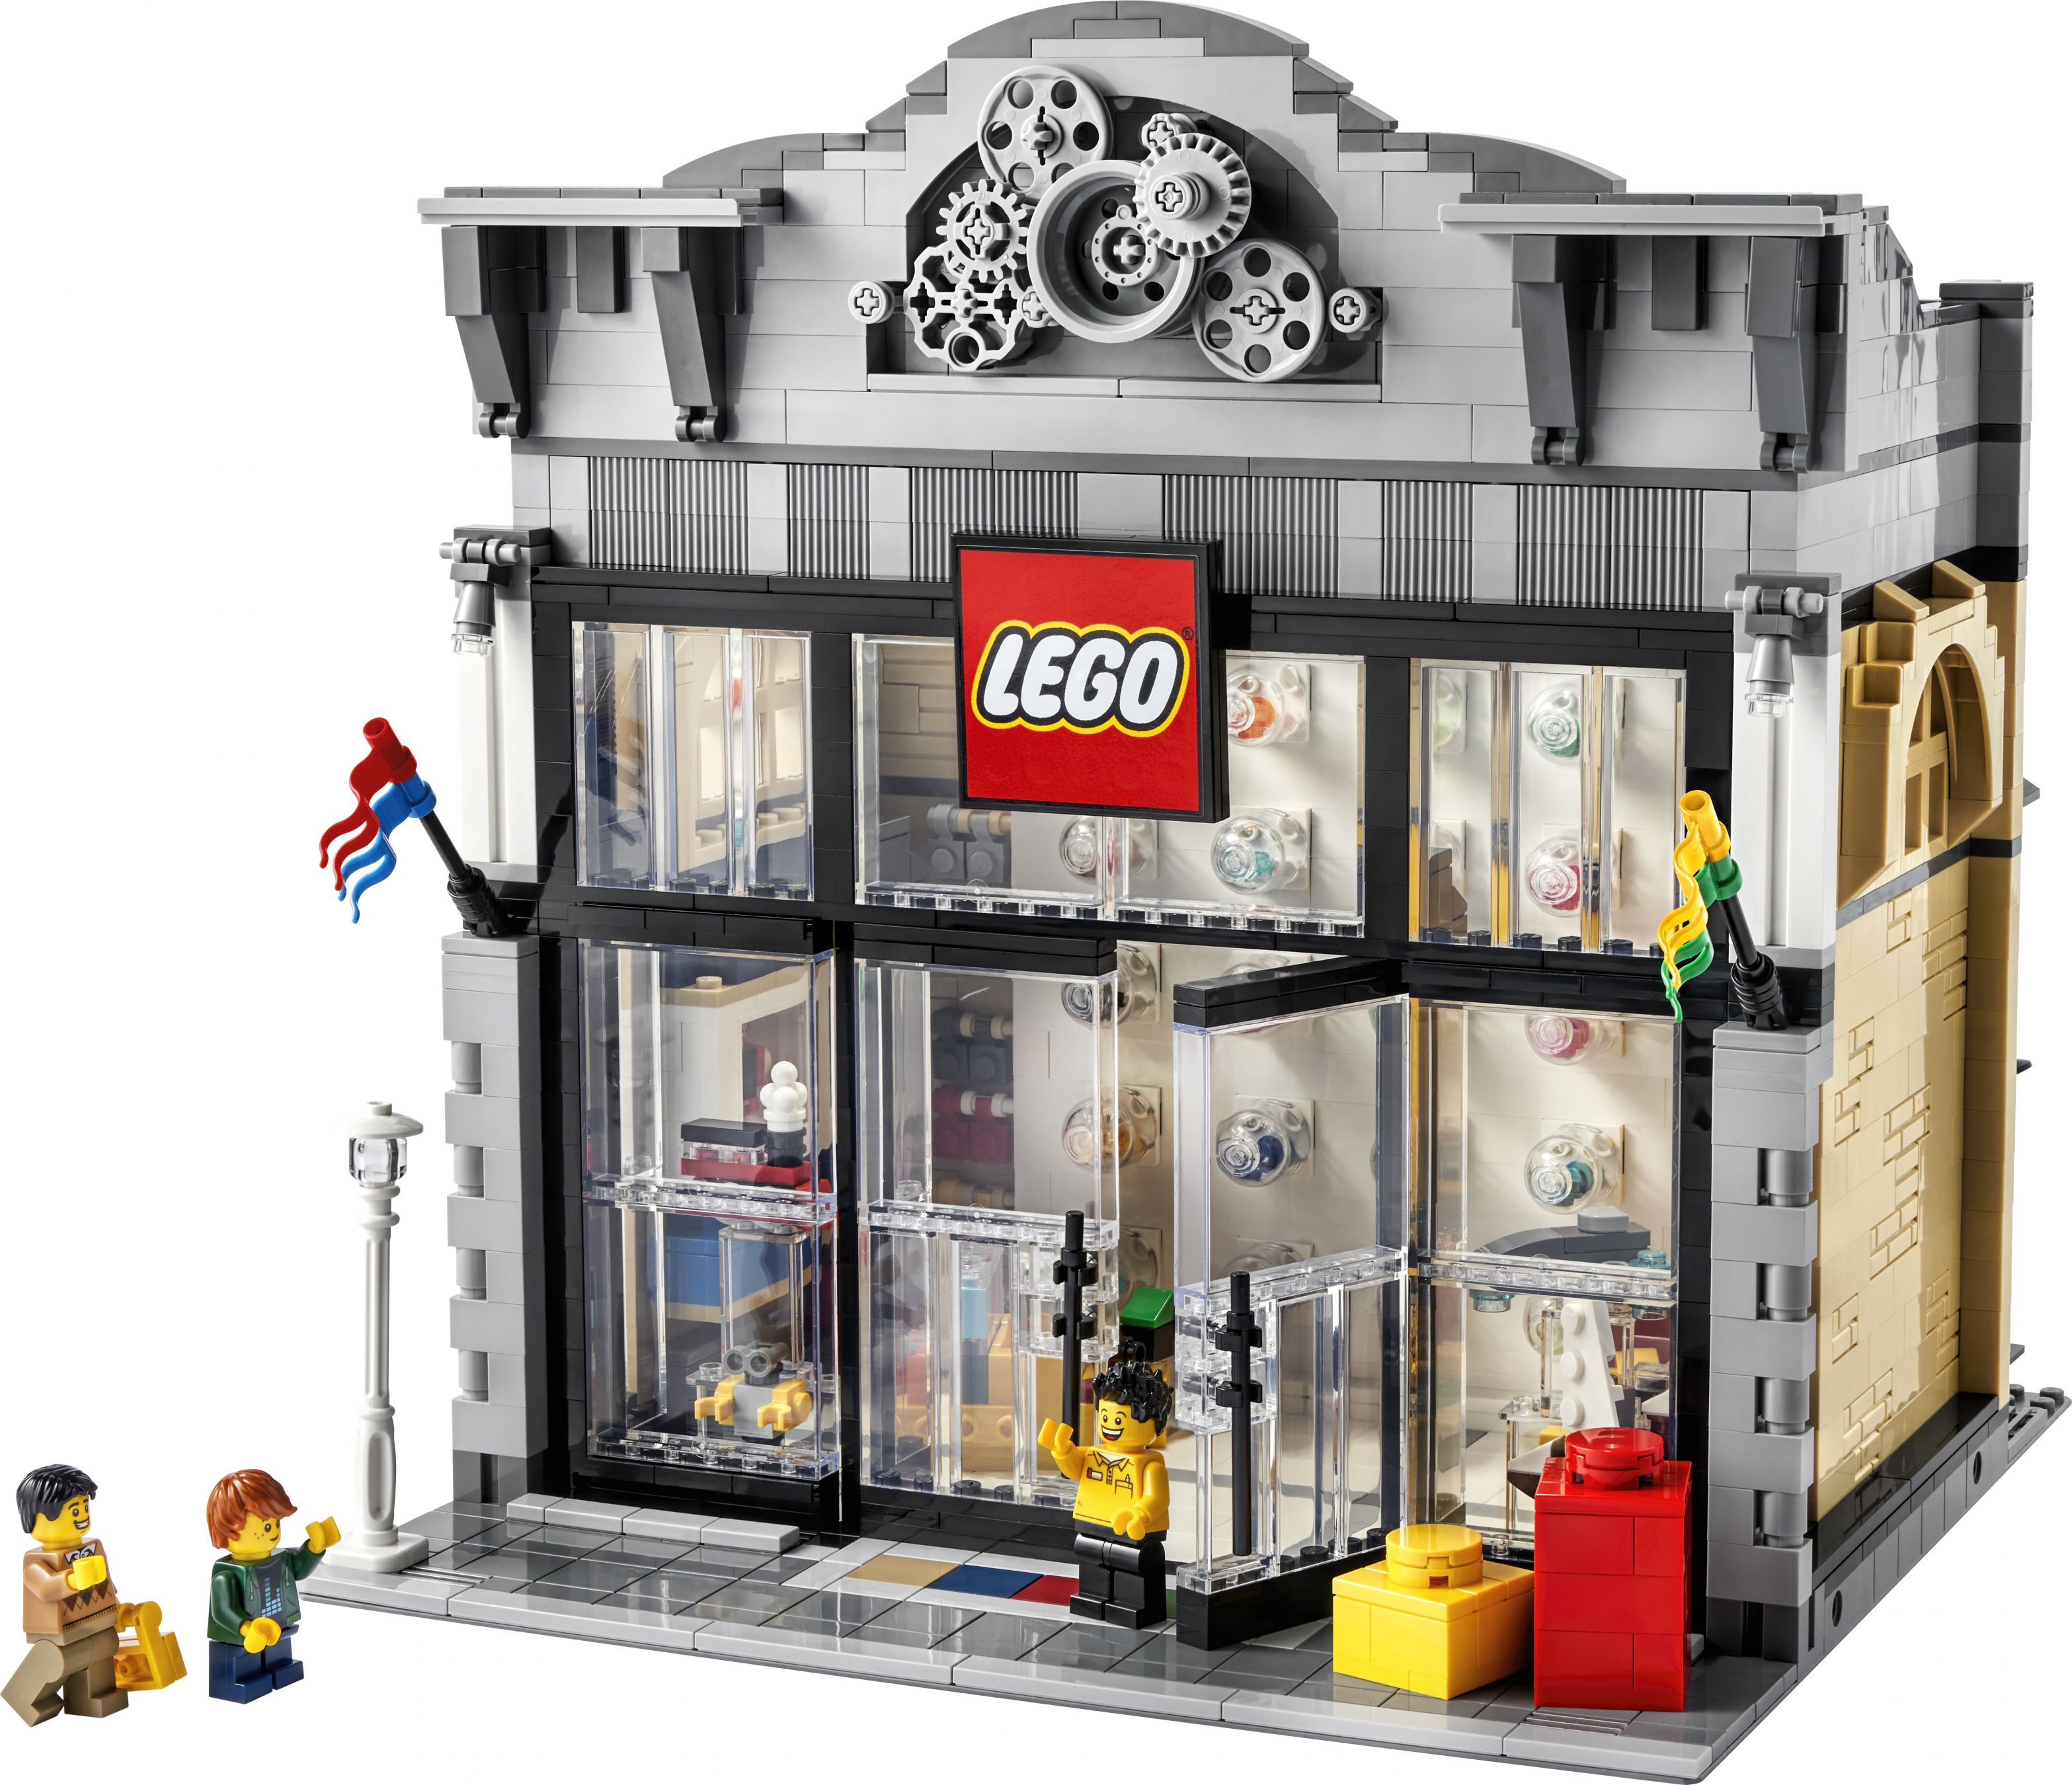 LEGO Bricklink 910009 LEGO® Store aus Modulen LEGO_910009_front_01.jpg